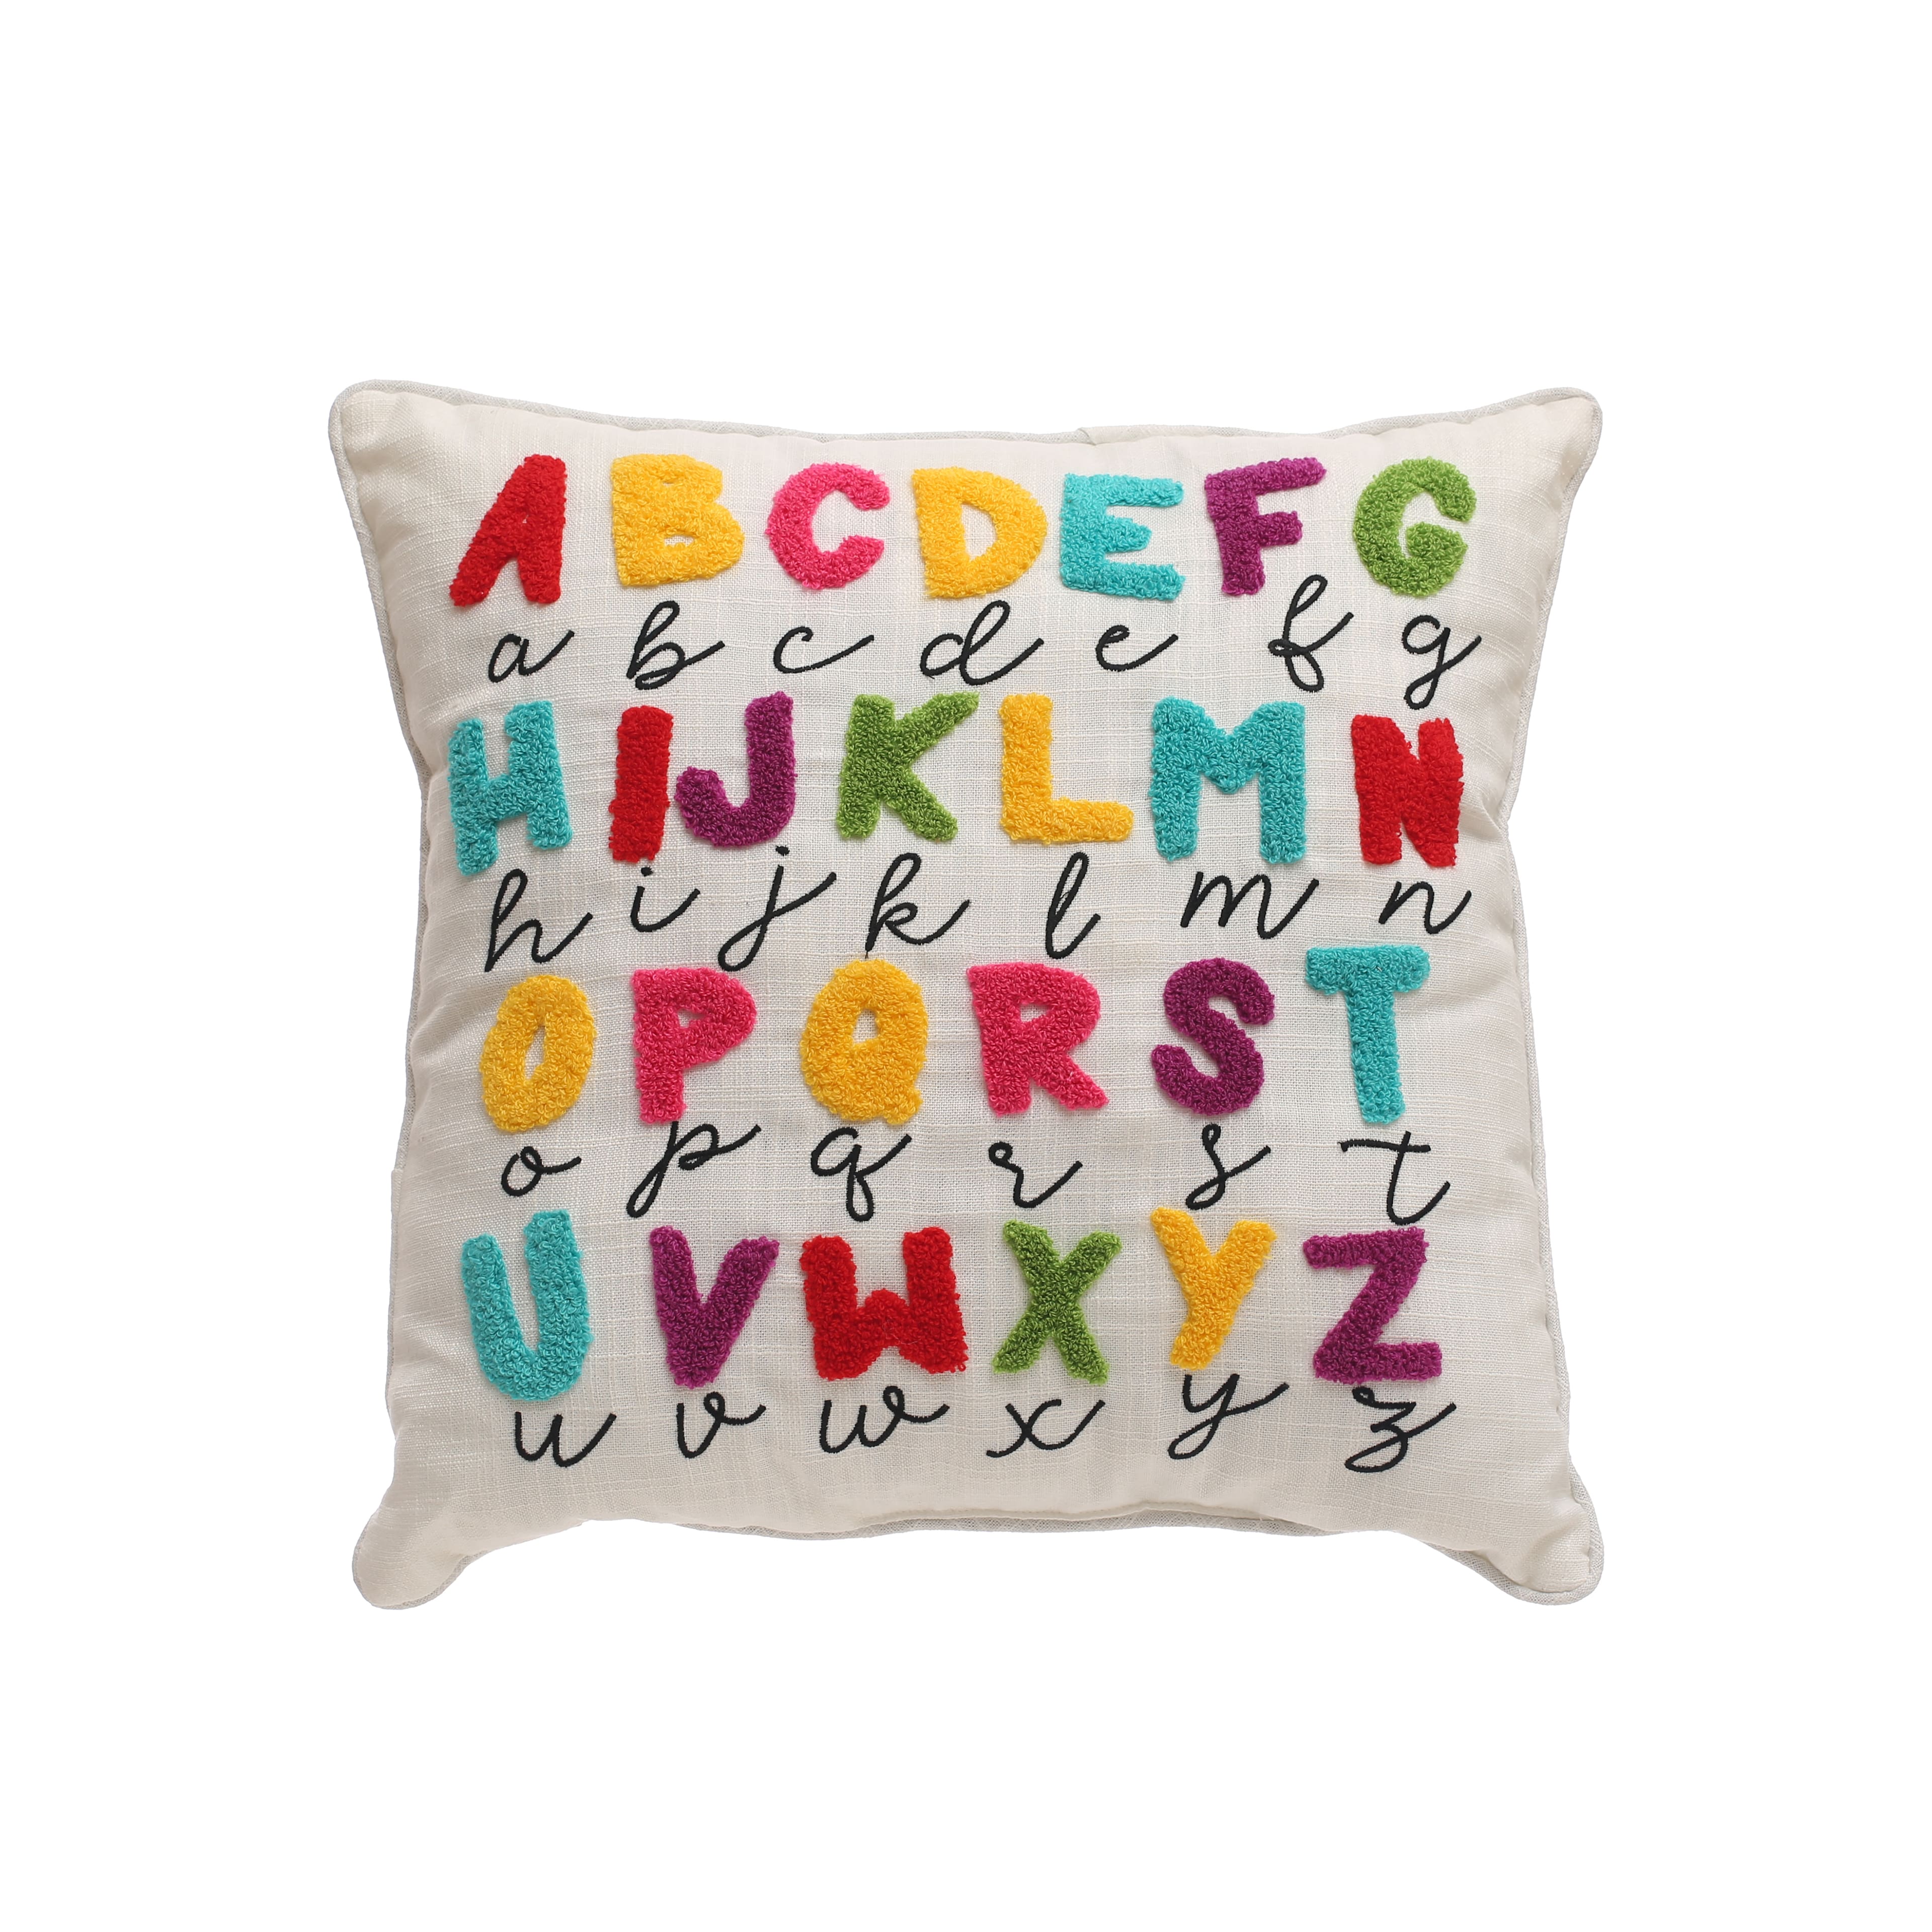 Class Rules! Alphabet Pillow by B2C&#x2122;